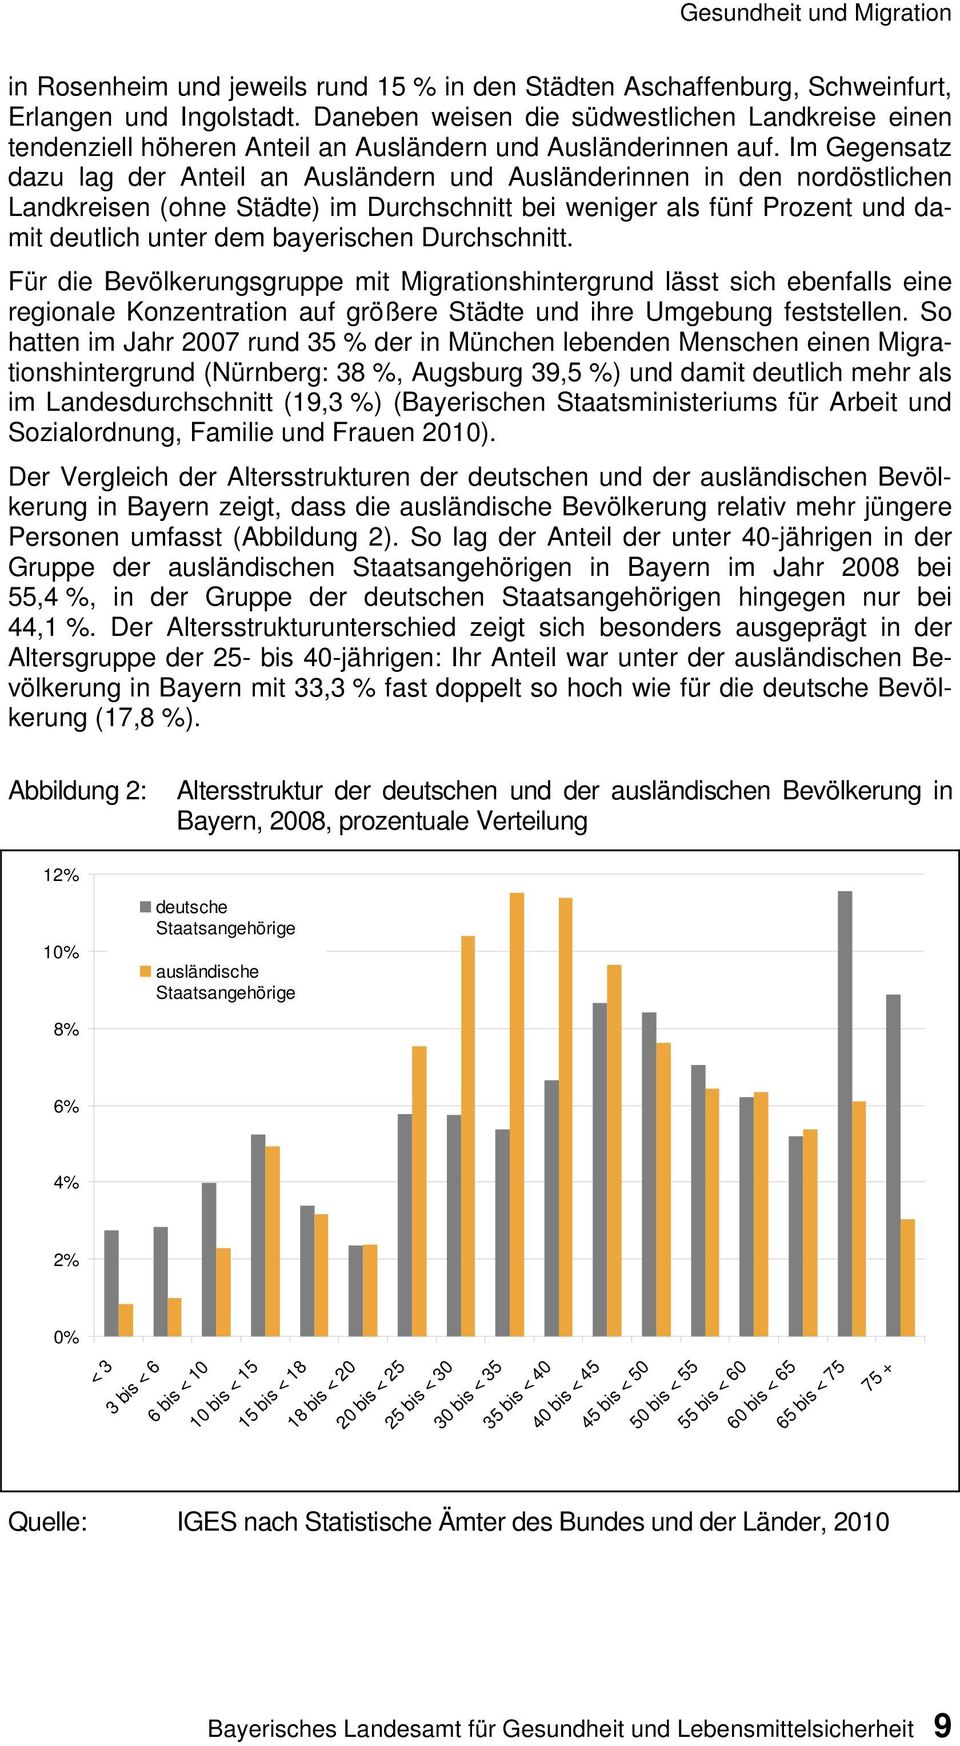 Im Gegensatz dazu lag der Anteil an Ausländern und Ausländerinnen in den nordöstlichen Landkreisen (ohne Städte) im Durchschnitt bei weniger als fünf Prozent und damit deutlich unter dem bayerischen